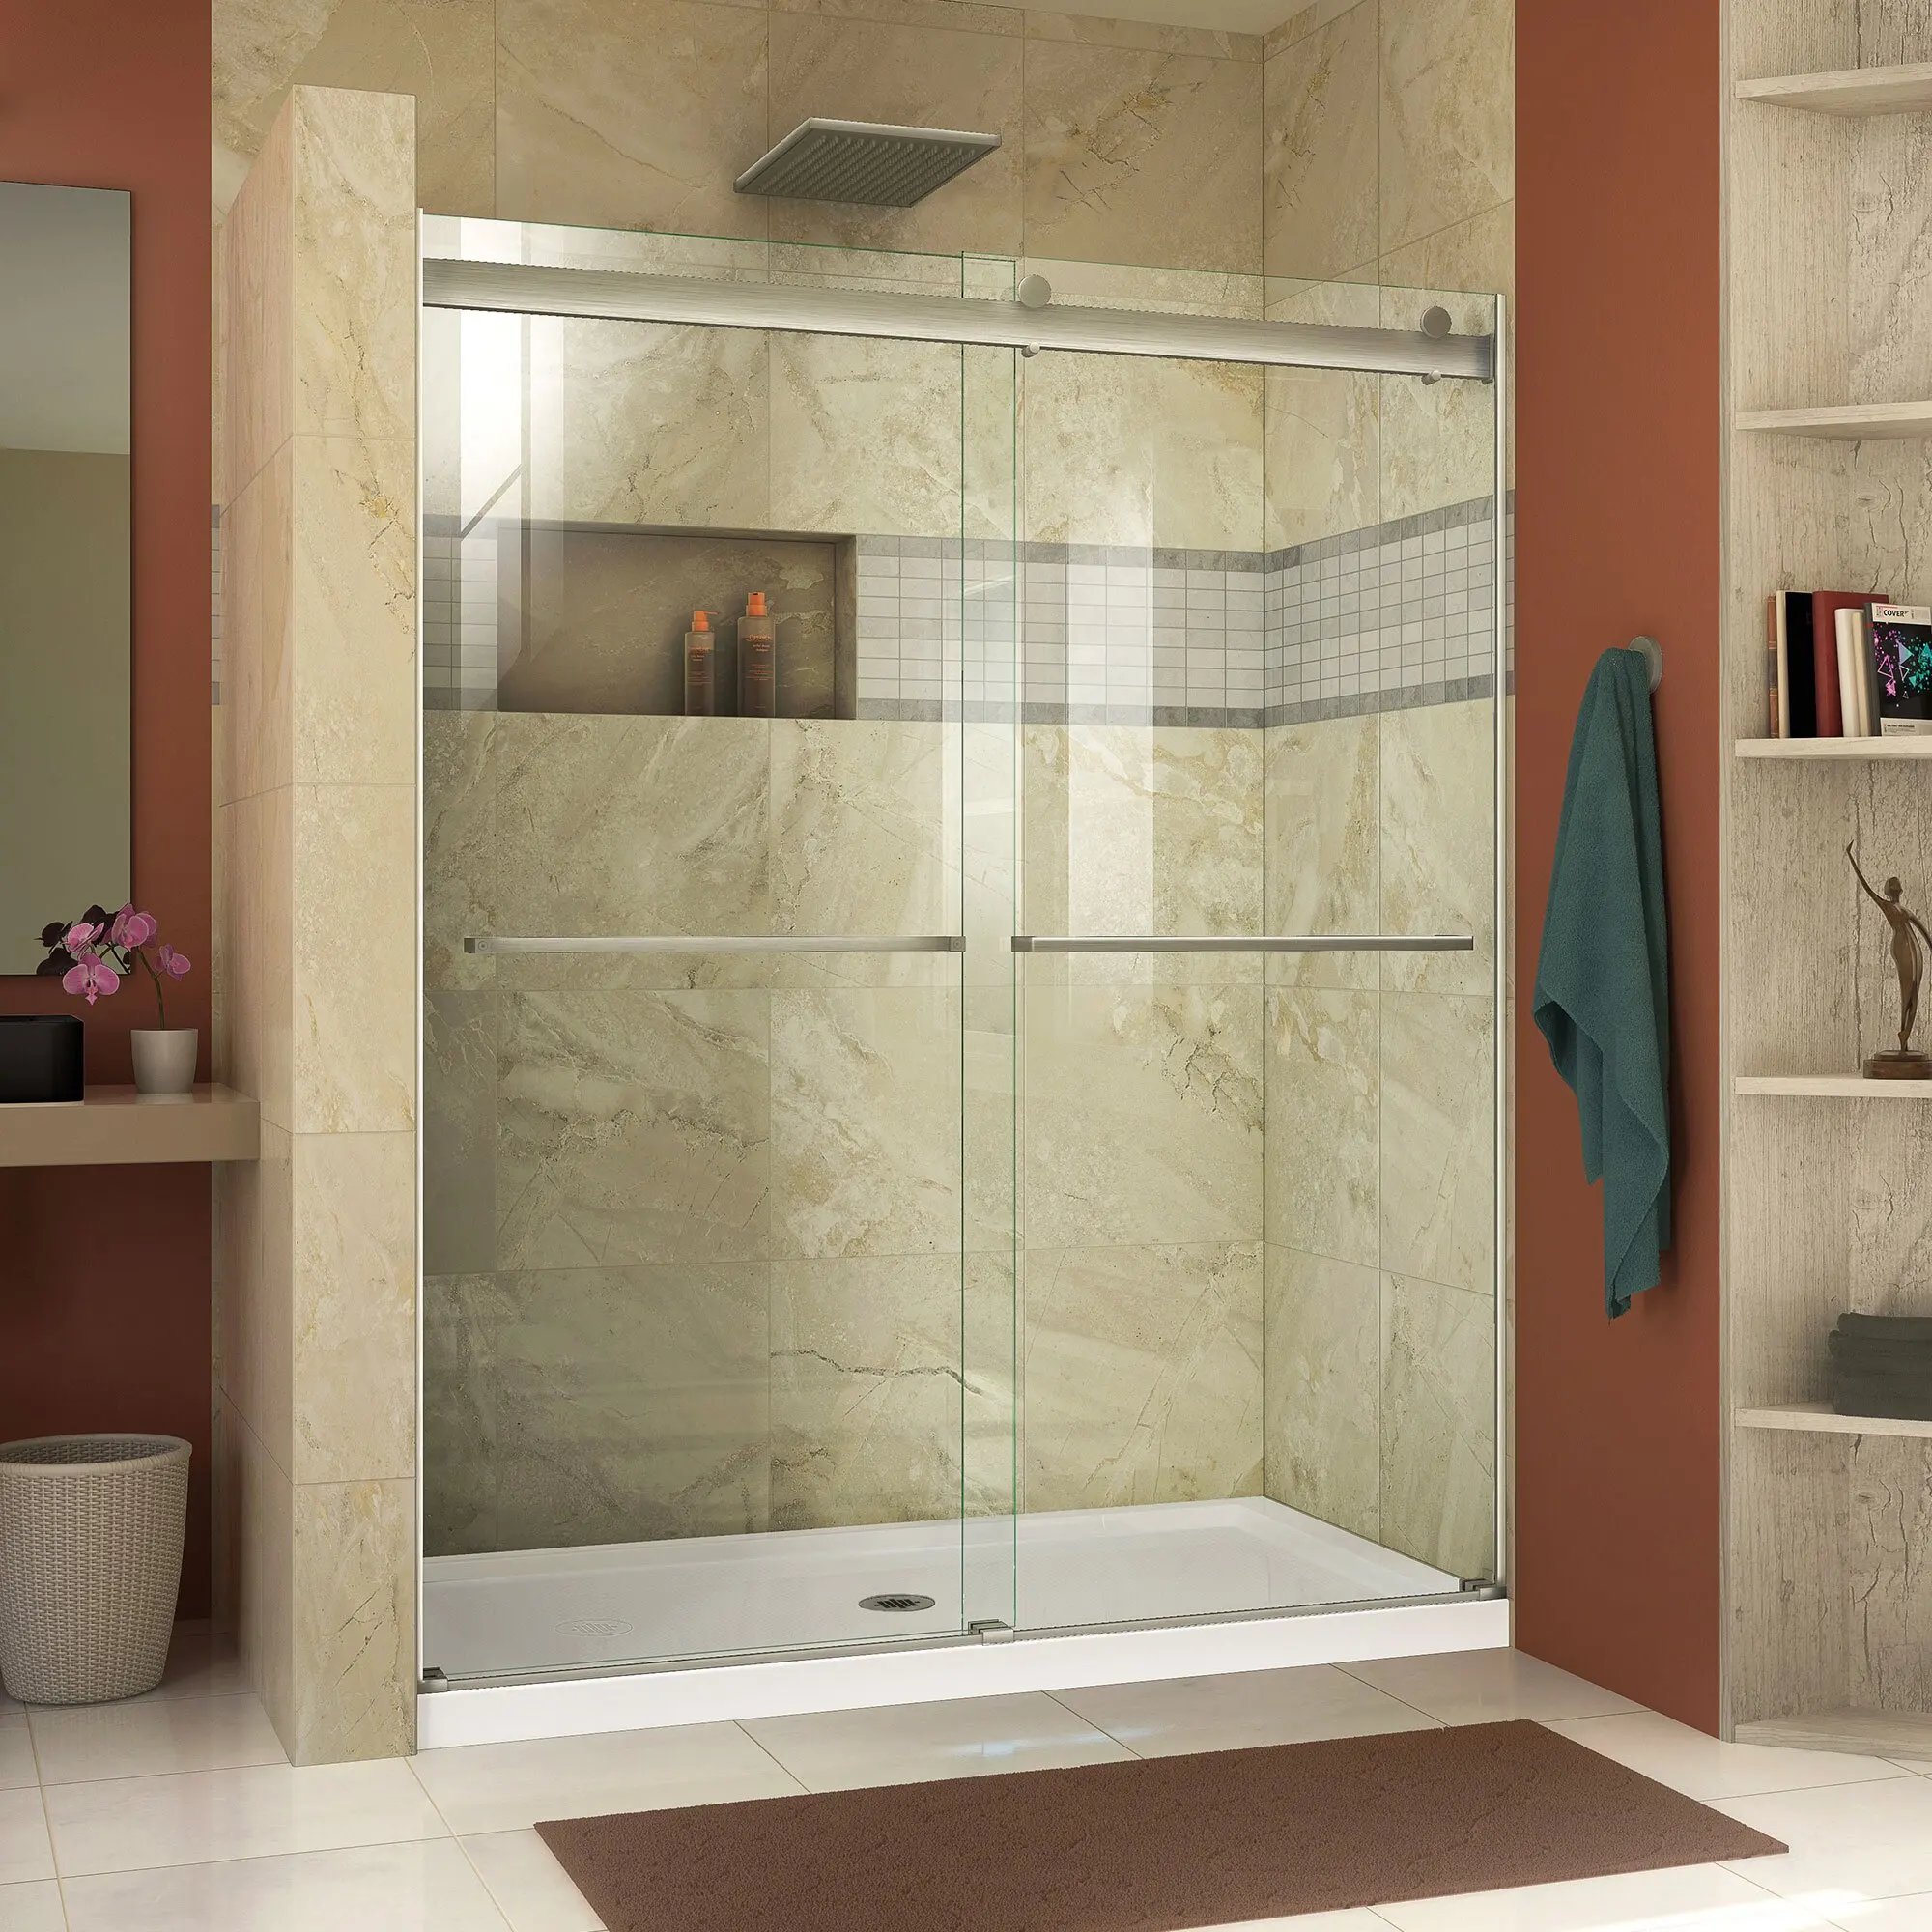 Стеклянные двери в ванну. Ванна с раздвижными стеклянными дверьми. Стеклянные дверцы в ванную. Раздвижные стеклянные двери в ванную. Стеклянная раздвижная дверь для ванной комнаты.